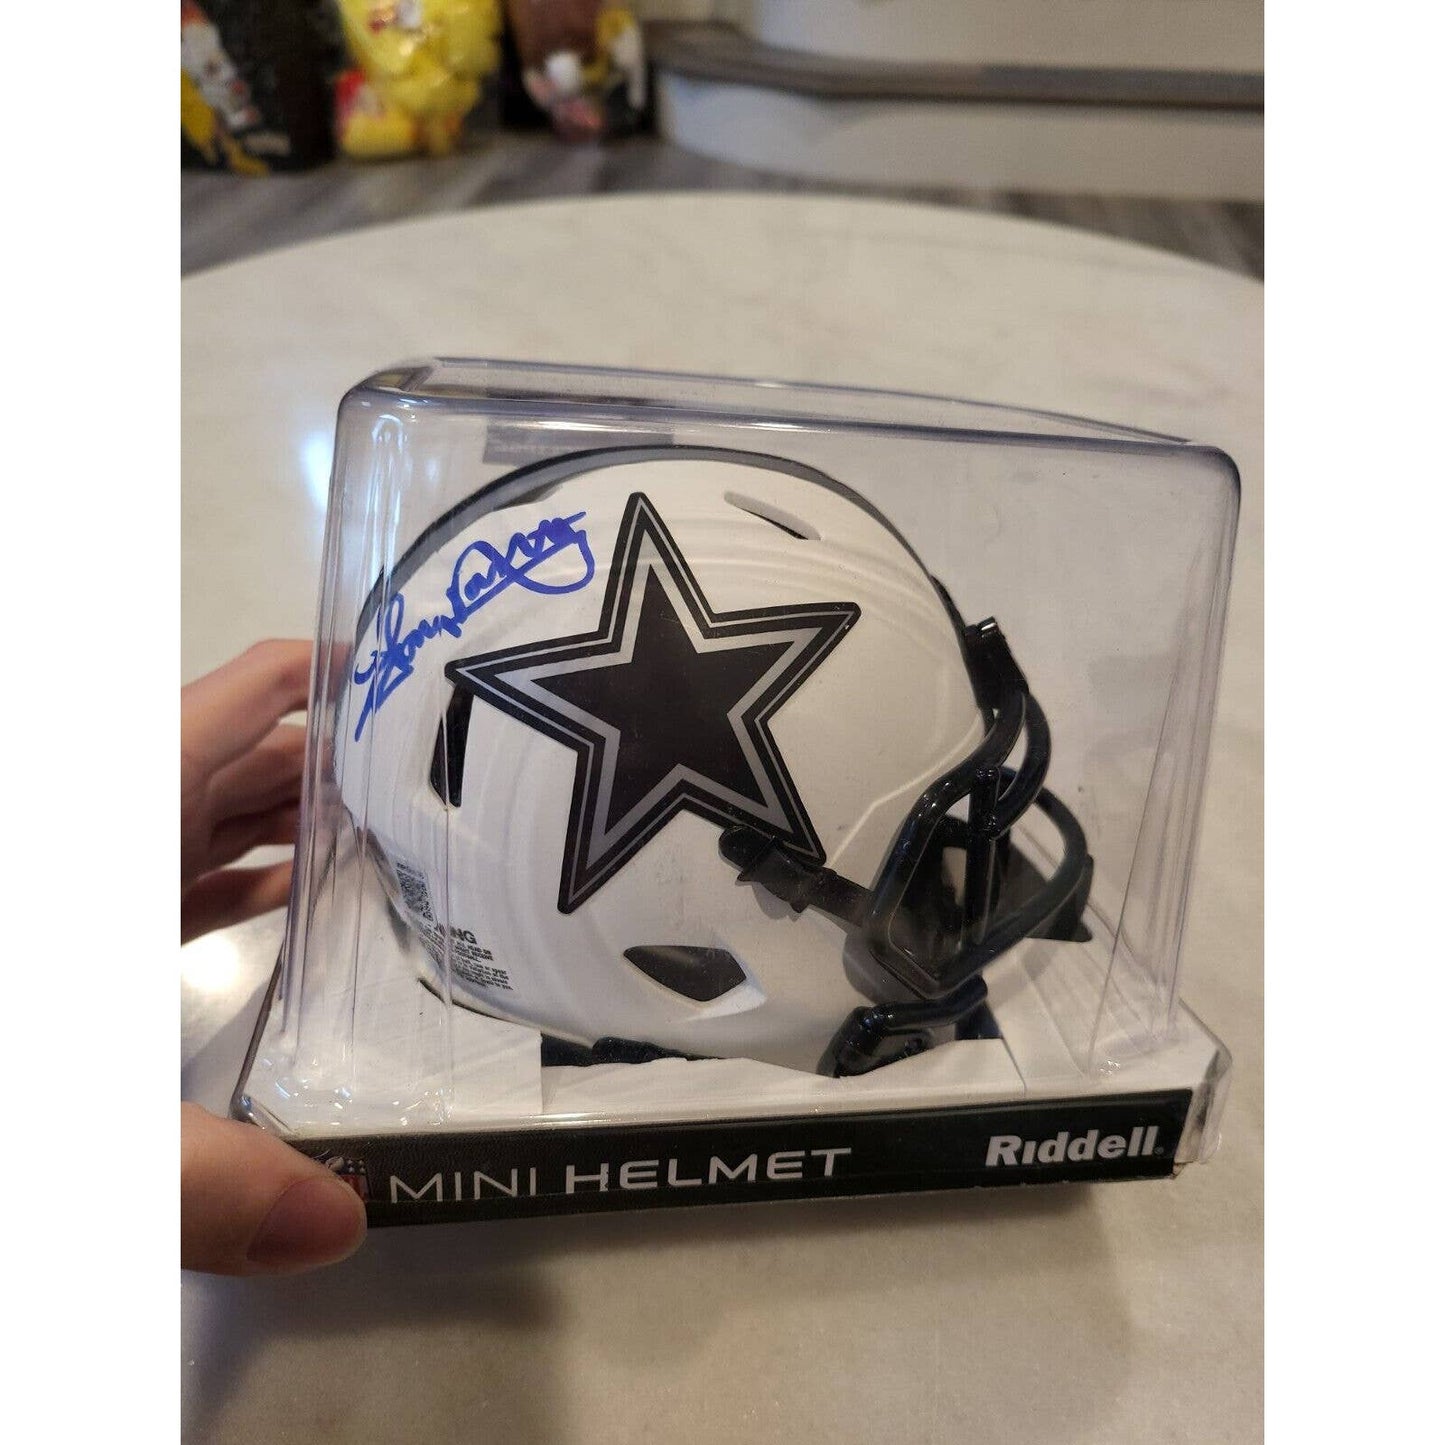 Tony Dorsett Autographed/Signed Mini Helmet Beckett Dallas Cowboys Lunar Eclipse - TreasuresEvolved